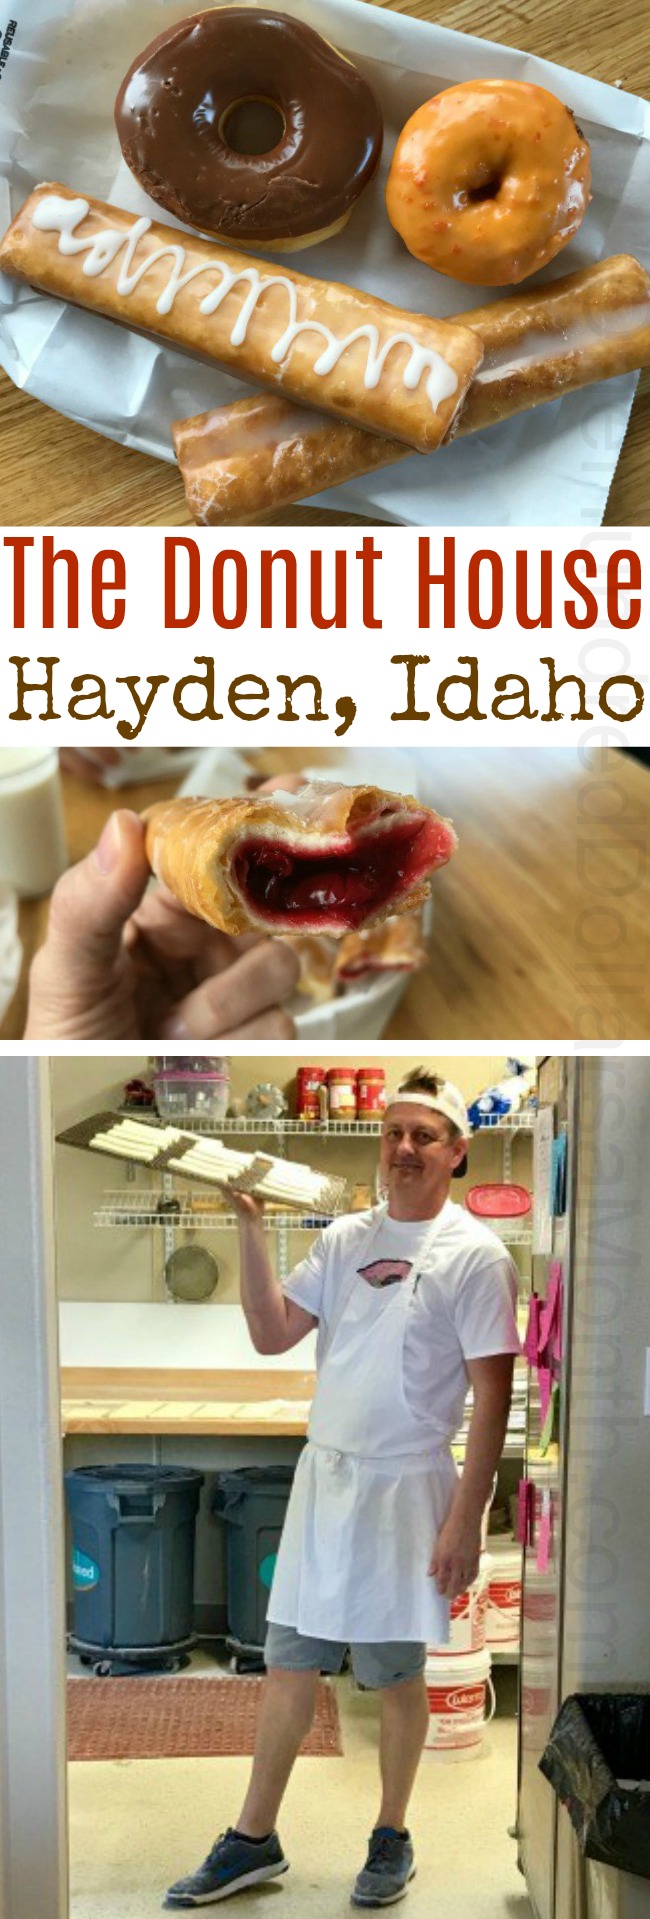 The Donut House – Hayden, Idaho